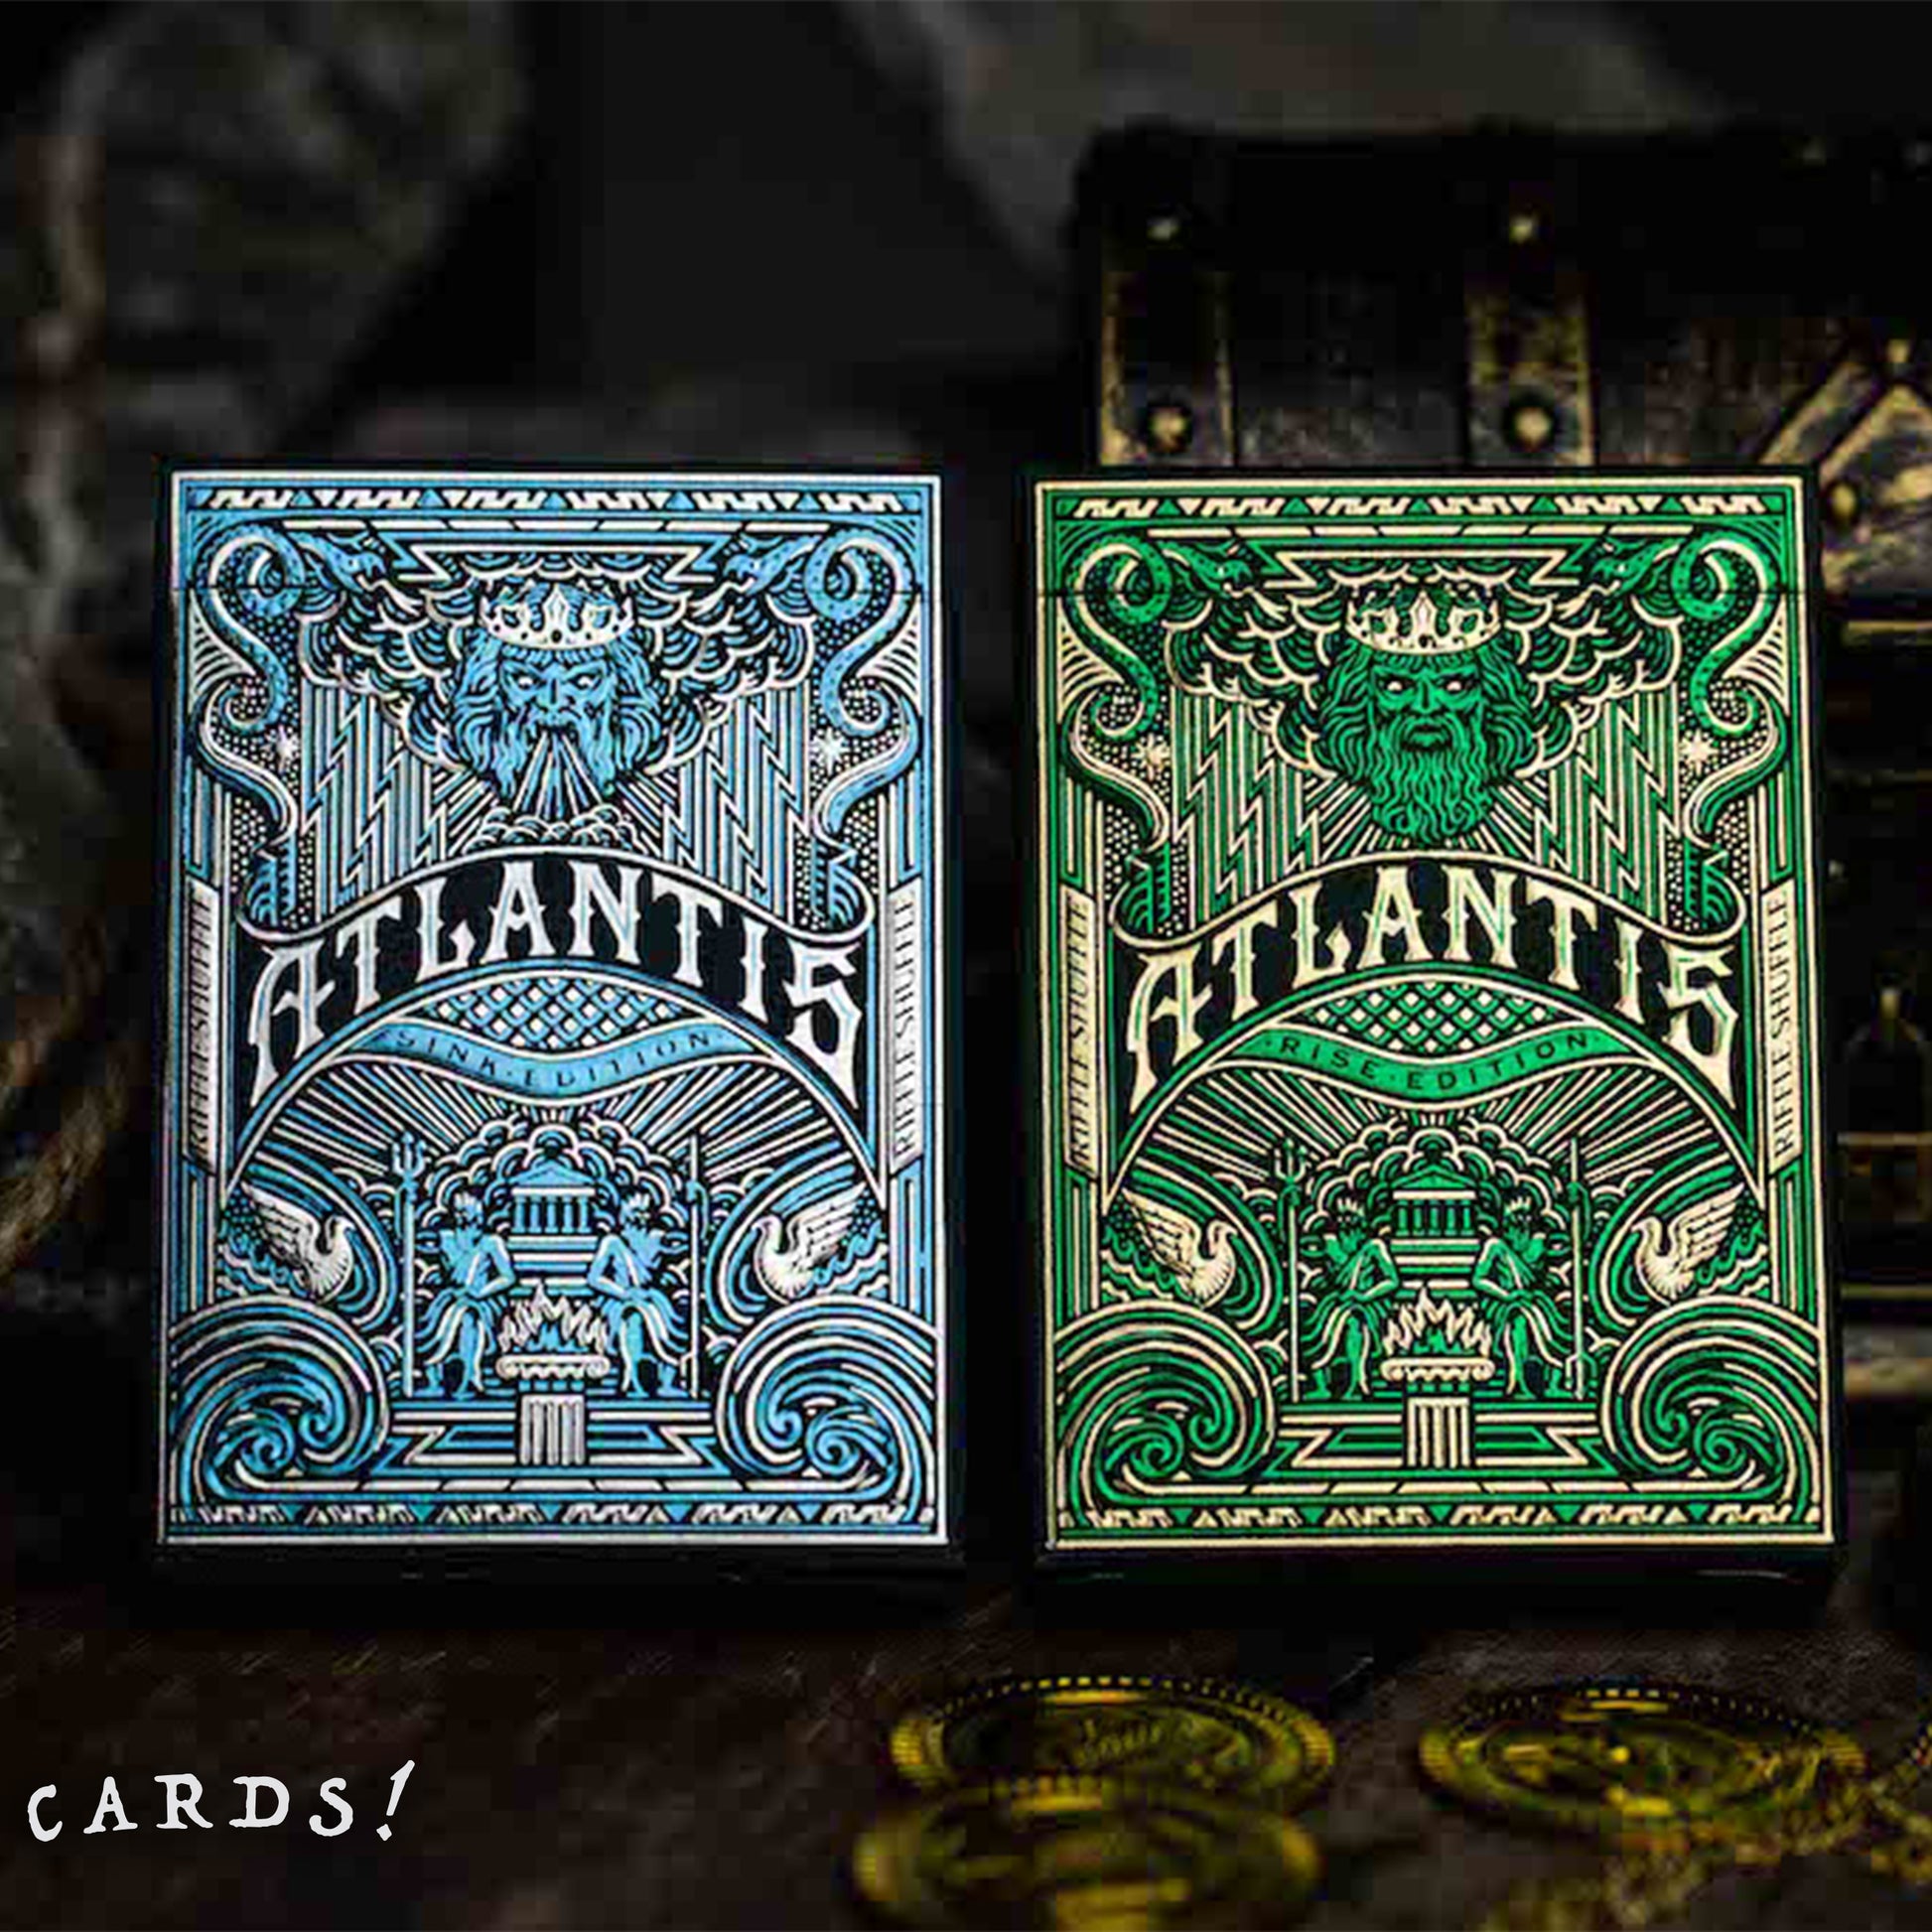 Atlantis 亞特蘭提斯 啤牌 撲克牌 - The Lanes HK